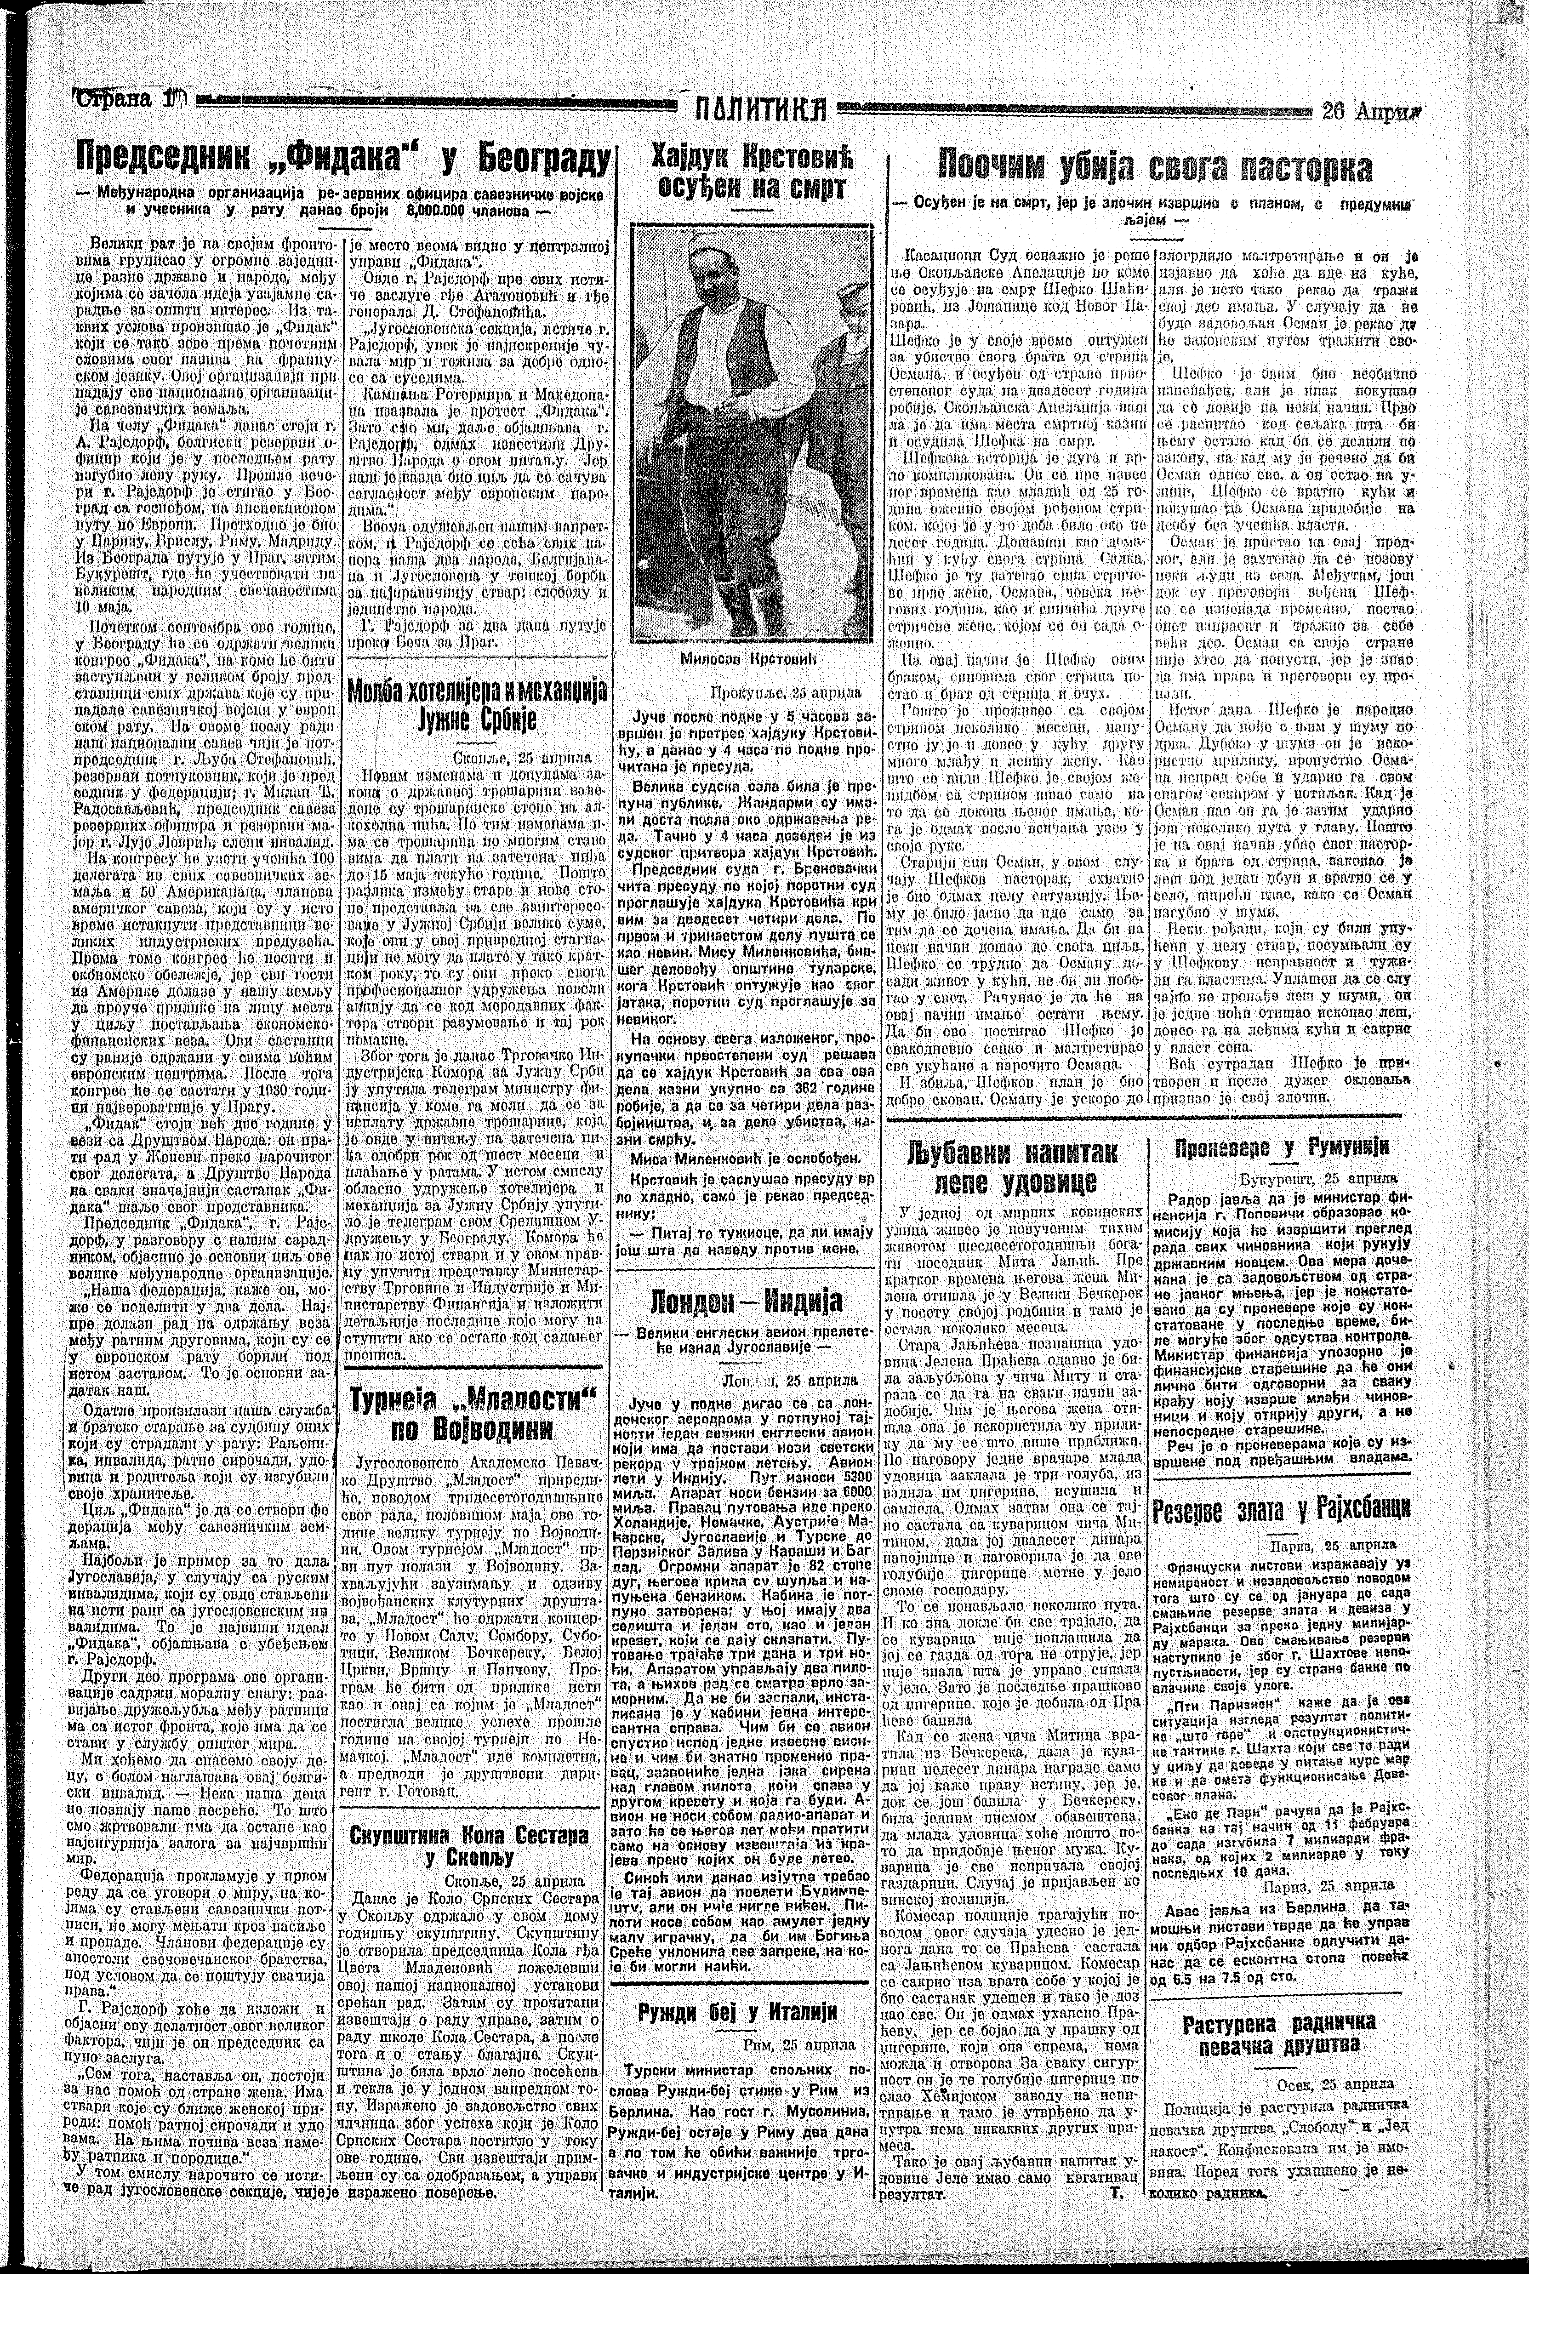 Hajduk Krstović osuđen na smrt, Politika, 26.04.1929.